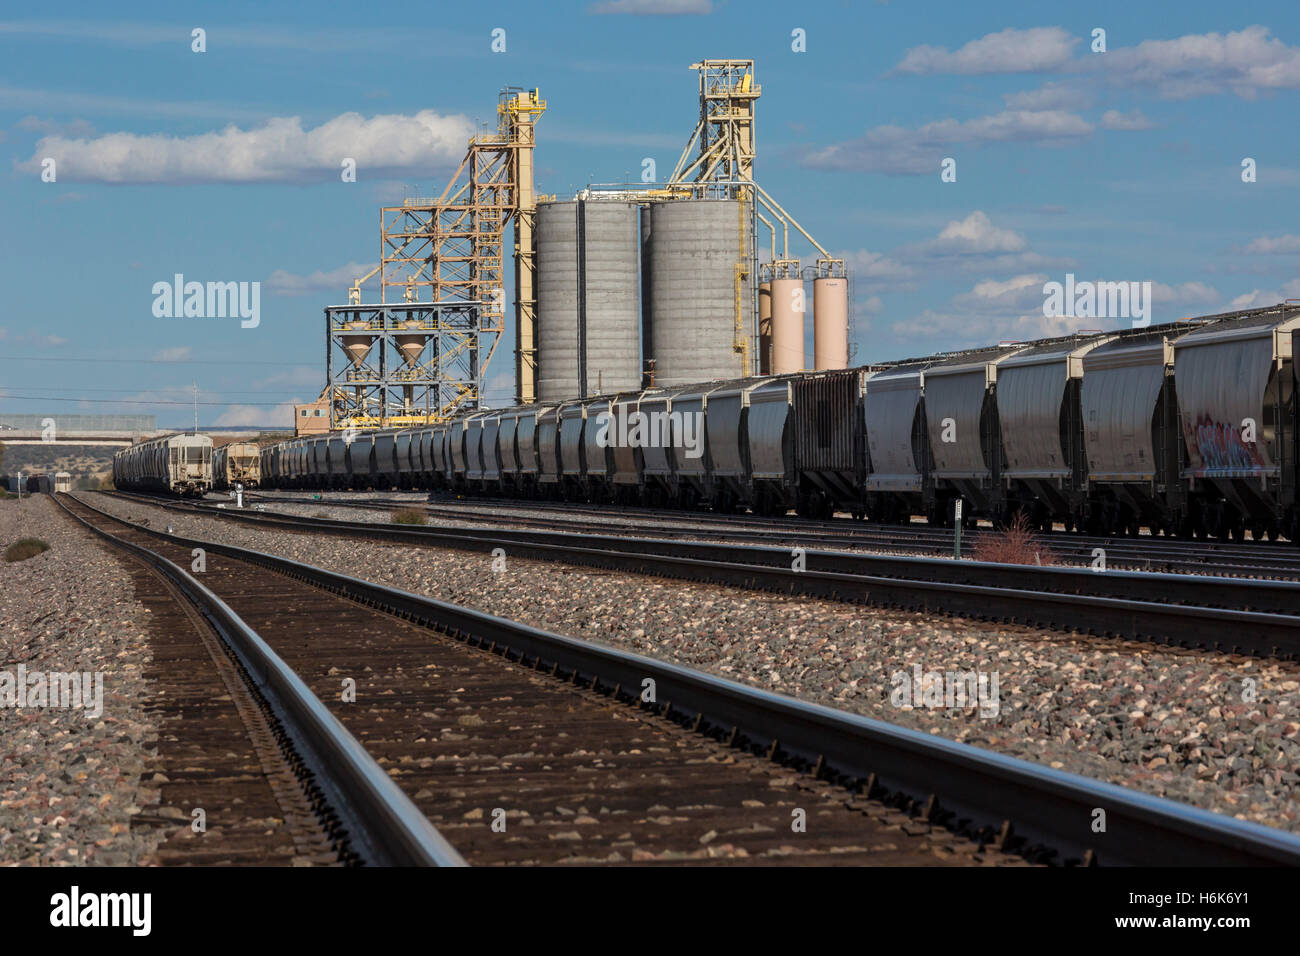 Sanders, Arizona - carichi alla rinfusa impianto di caricamento sul Burlington Northern Santa Fe railroad. Foto Stock